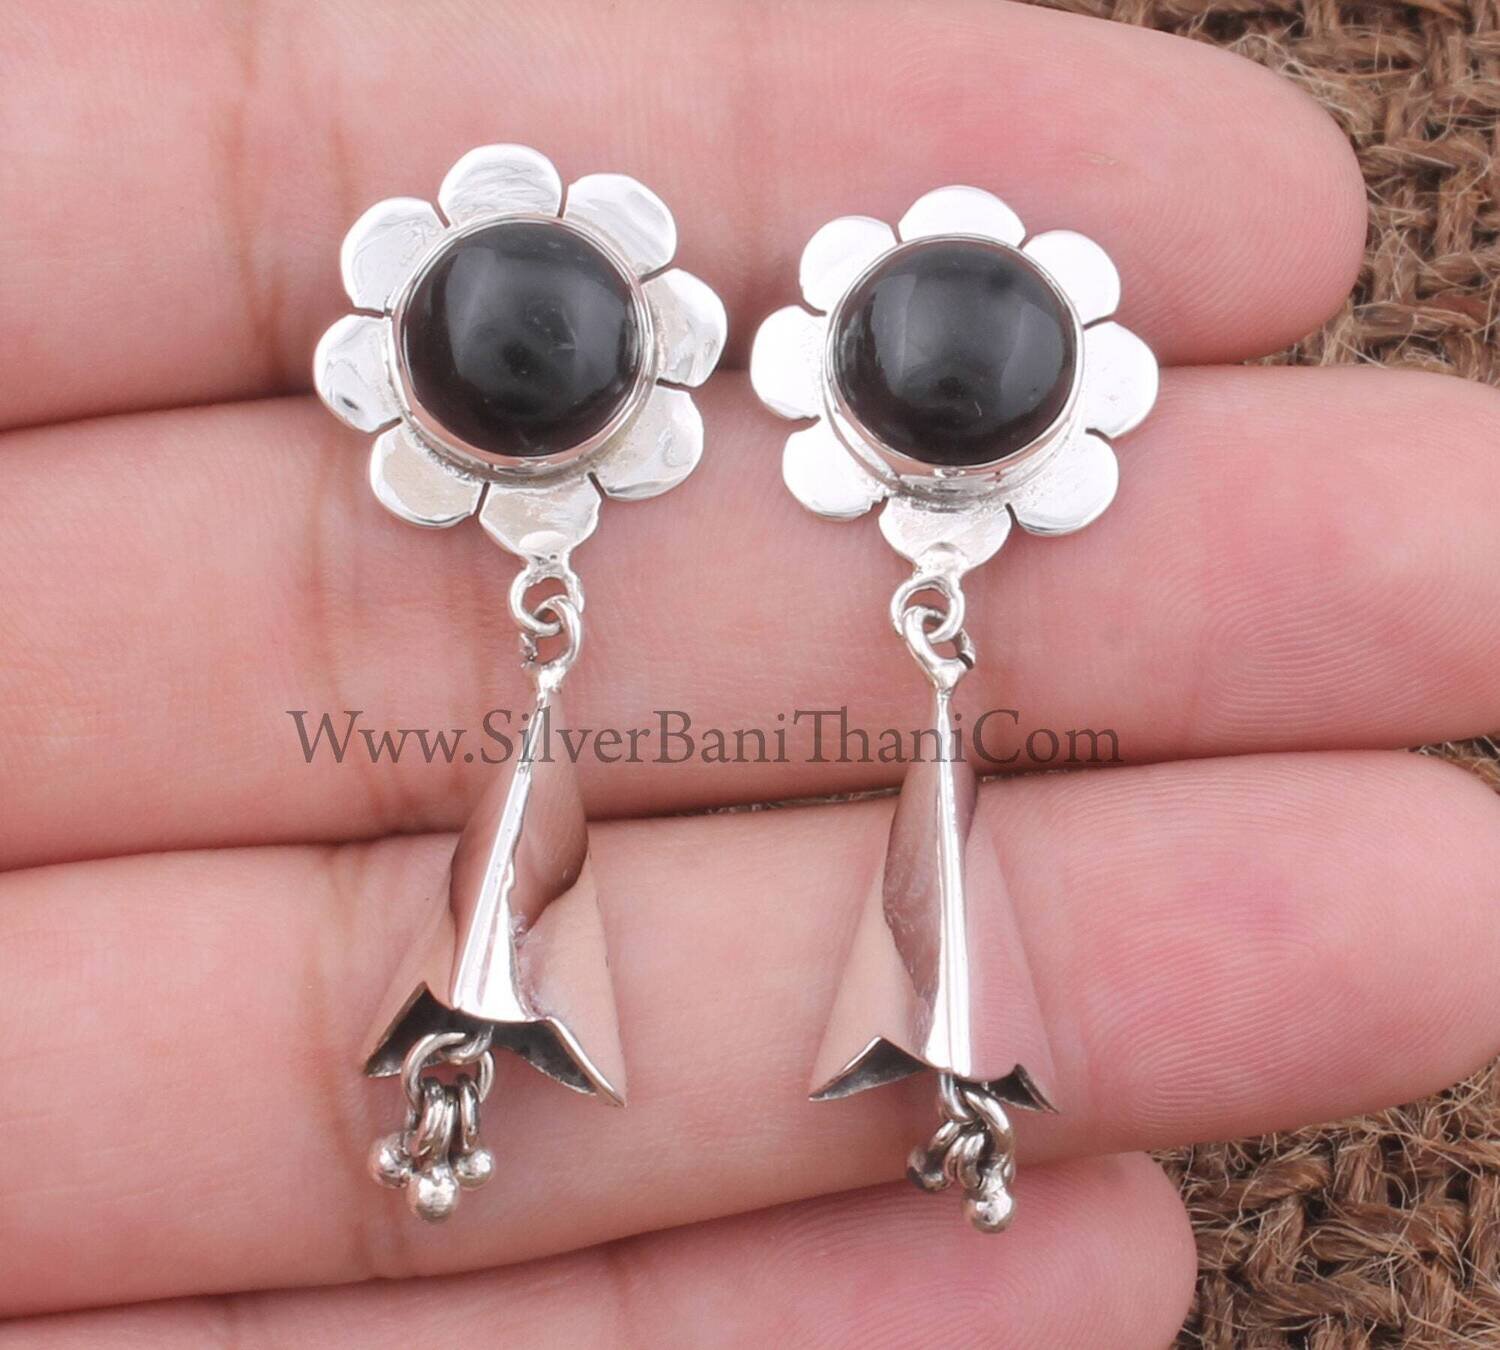 Black Onyx Silver Earrings 925 Sterling Solid Silver Earrings Flower Silver Earrings Gemstone Earrings Handmade Jewelry Women Earrings Gift